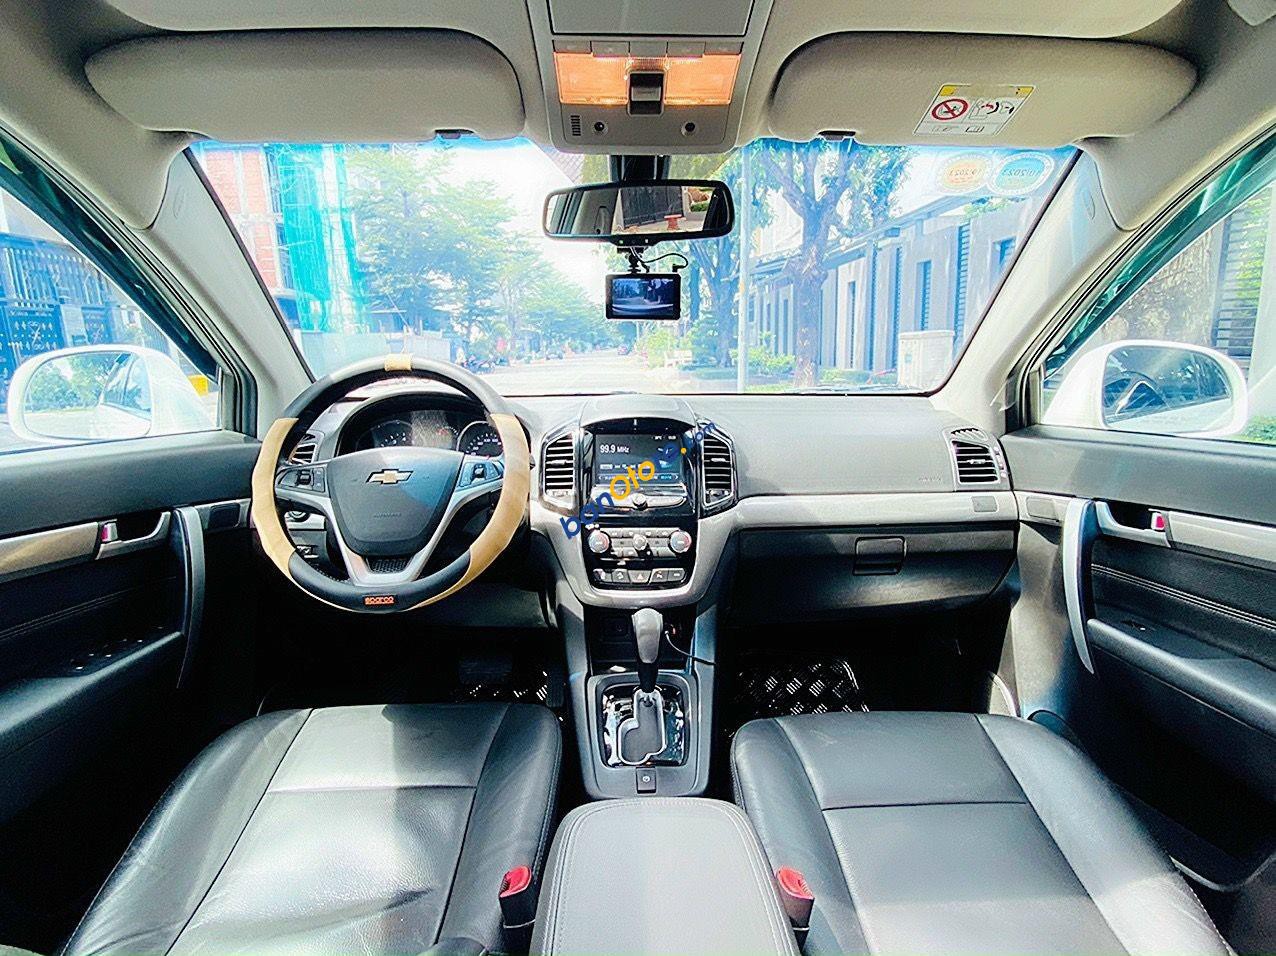 Chevrolet Captiva 2016 - AT full option - Bản cao cấp nhất xe cực đẹp